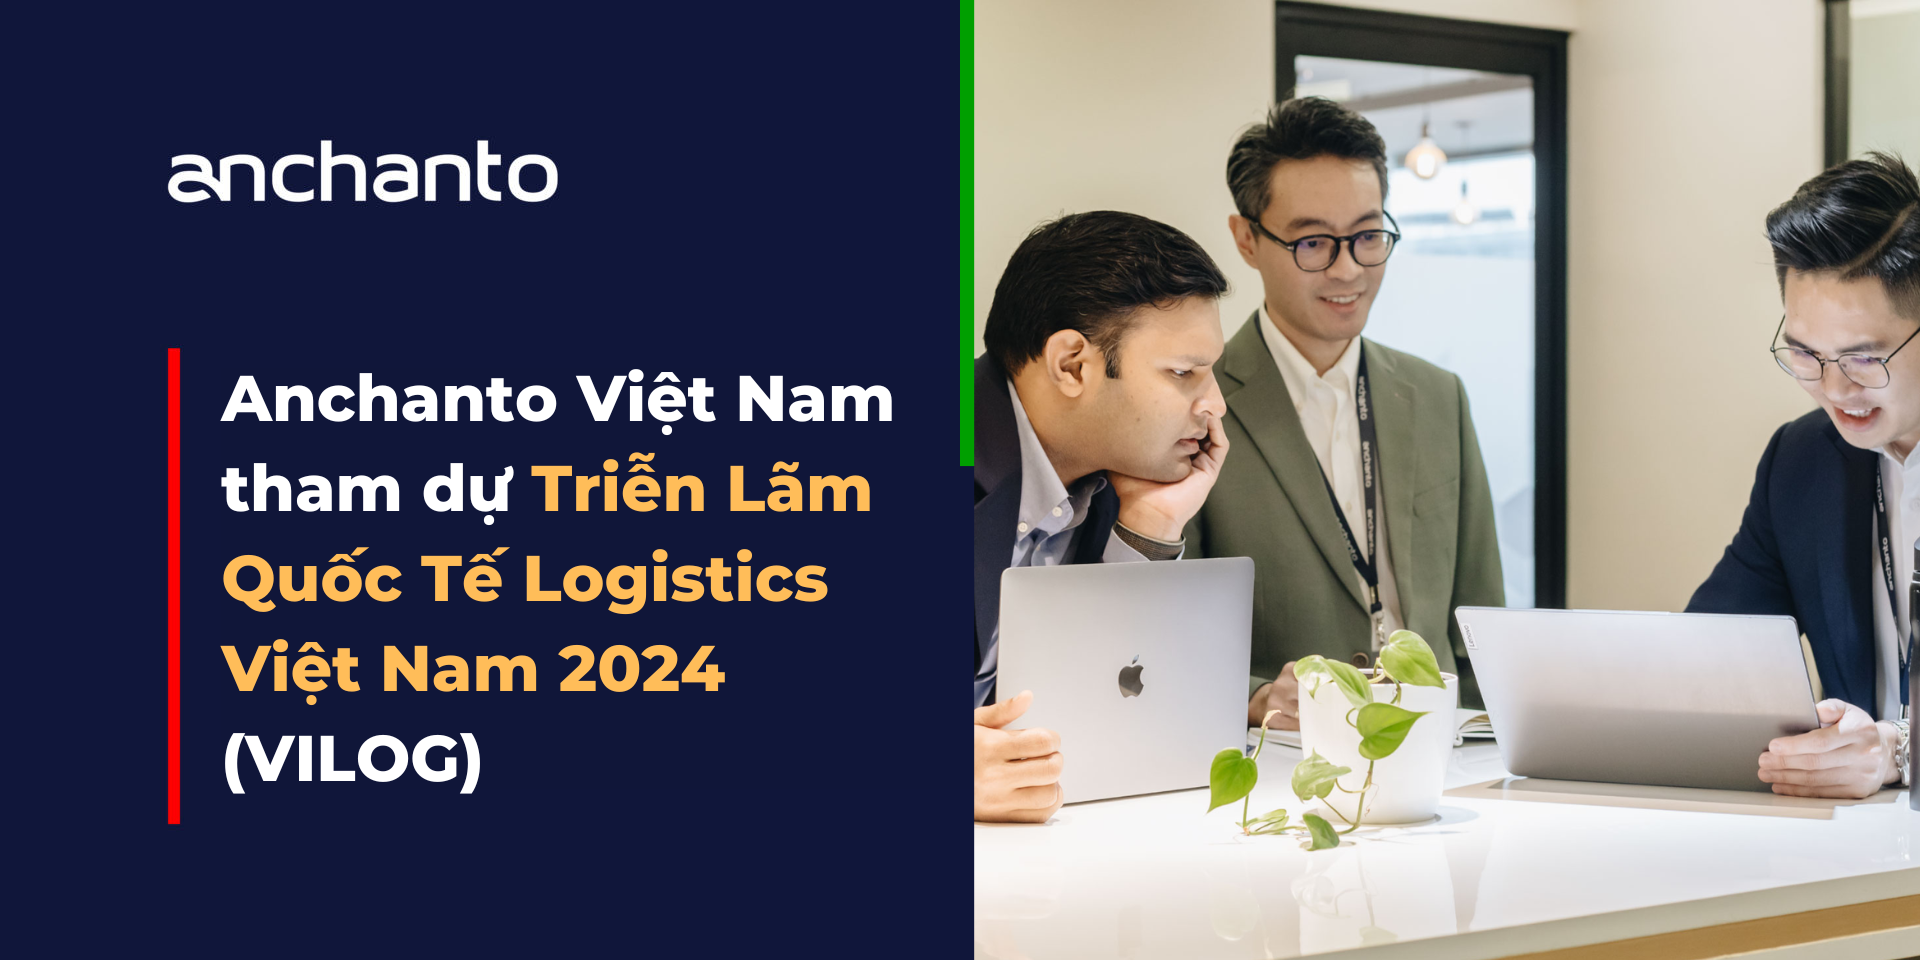 Anchanto Việt Nam Tham Dự Triển Lãm Quốc Tế Logistics Việt Nam 2024 (VILOG)